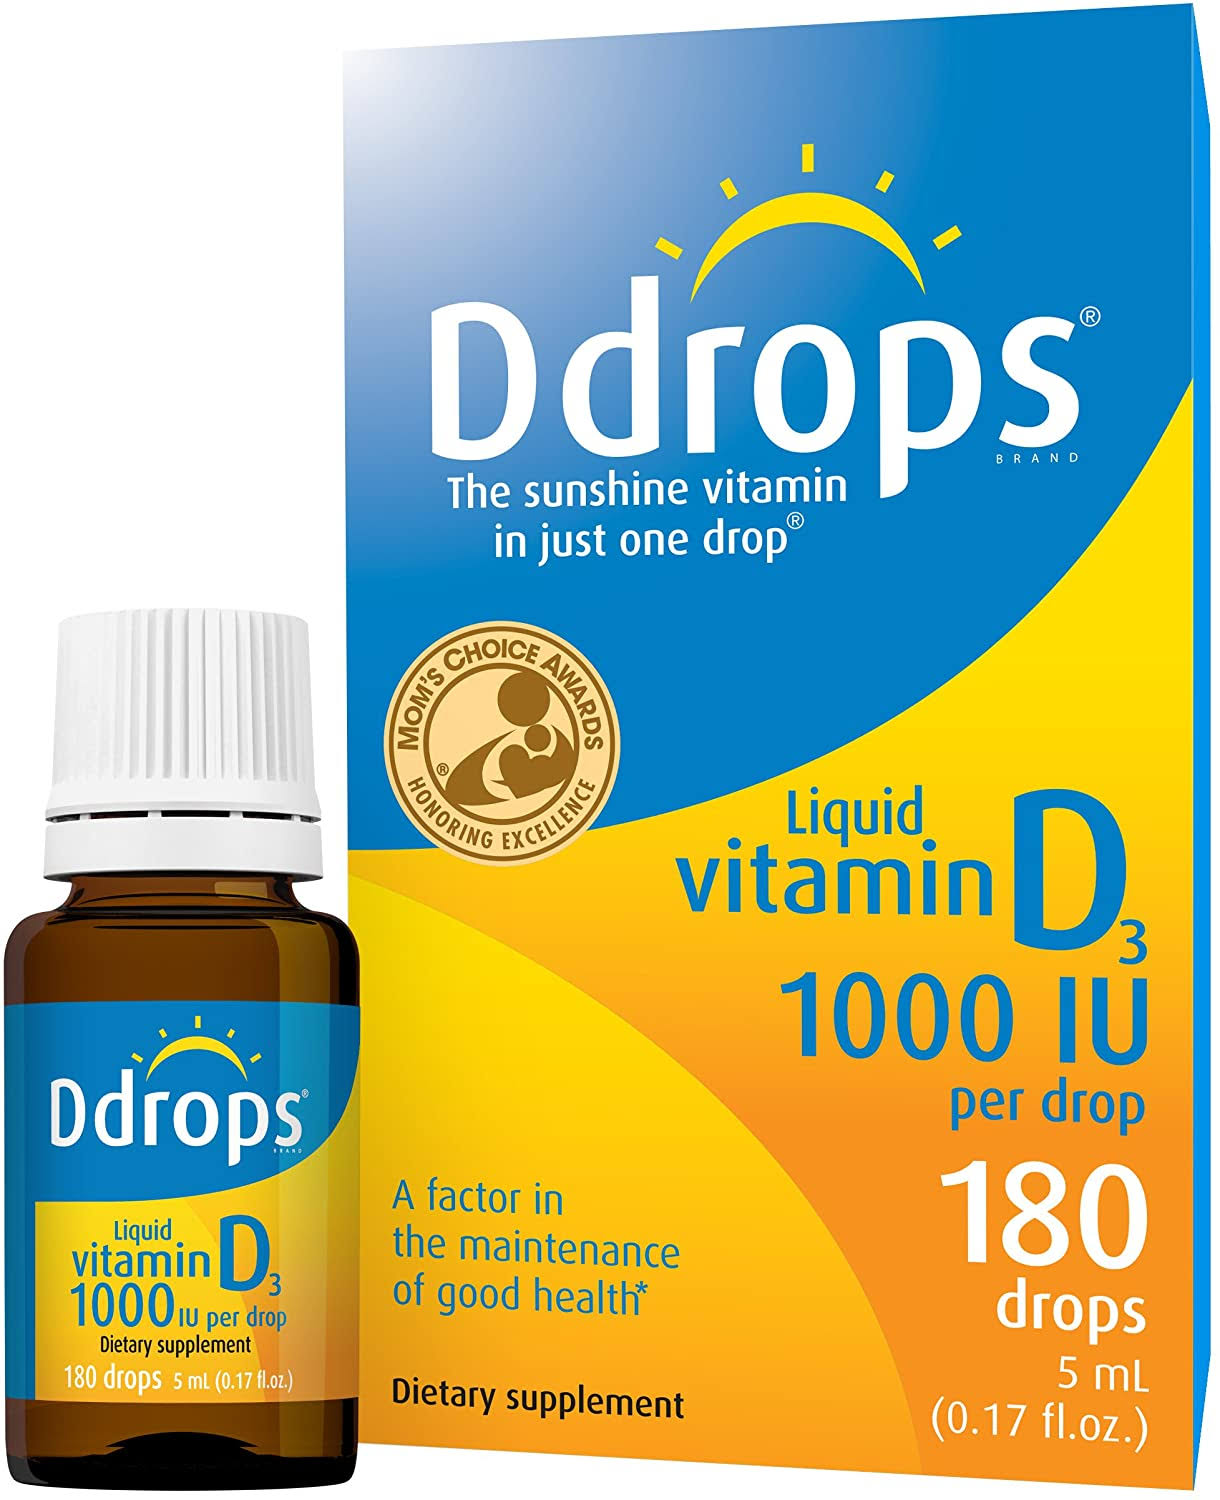 Ddrops Vitamin D Liquid - 1000 UI, 180 Drops, 5ml